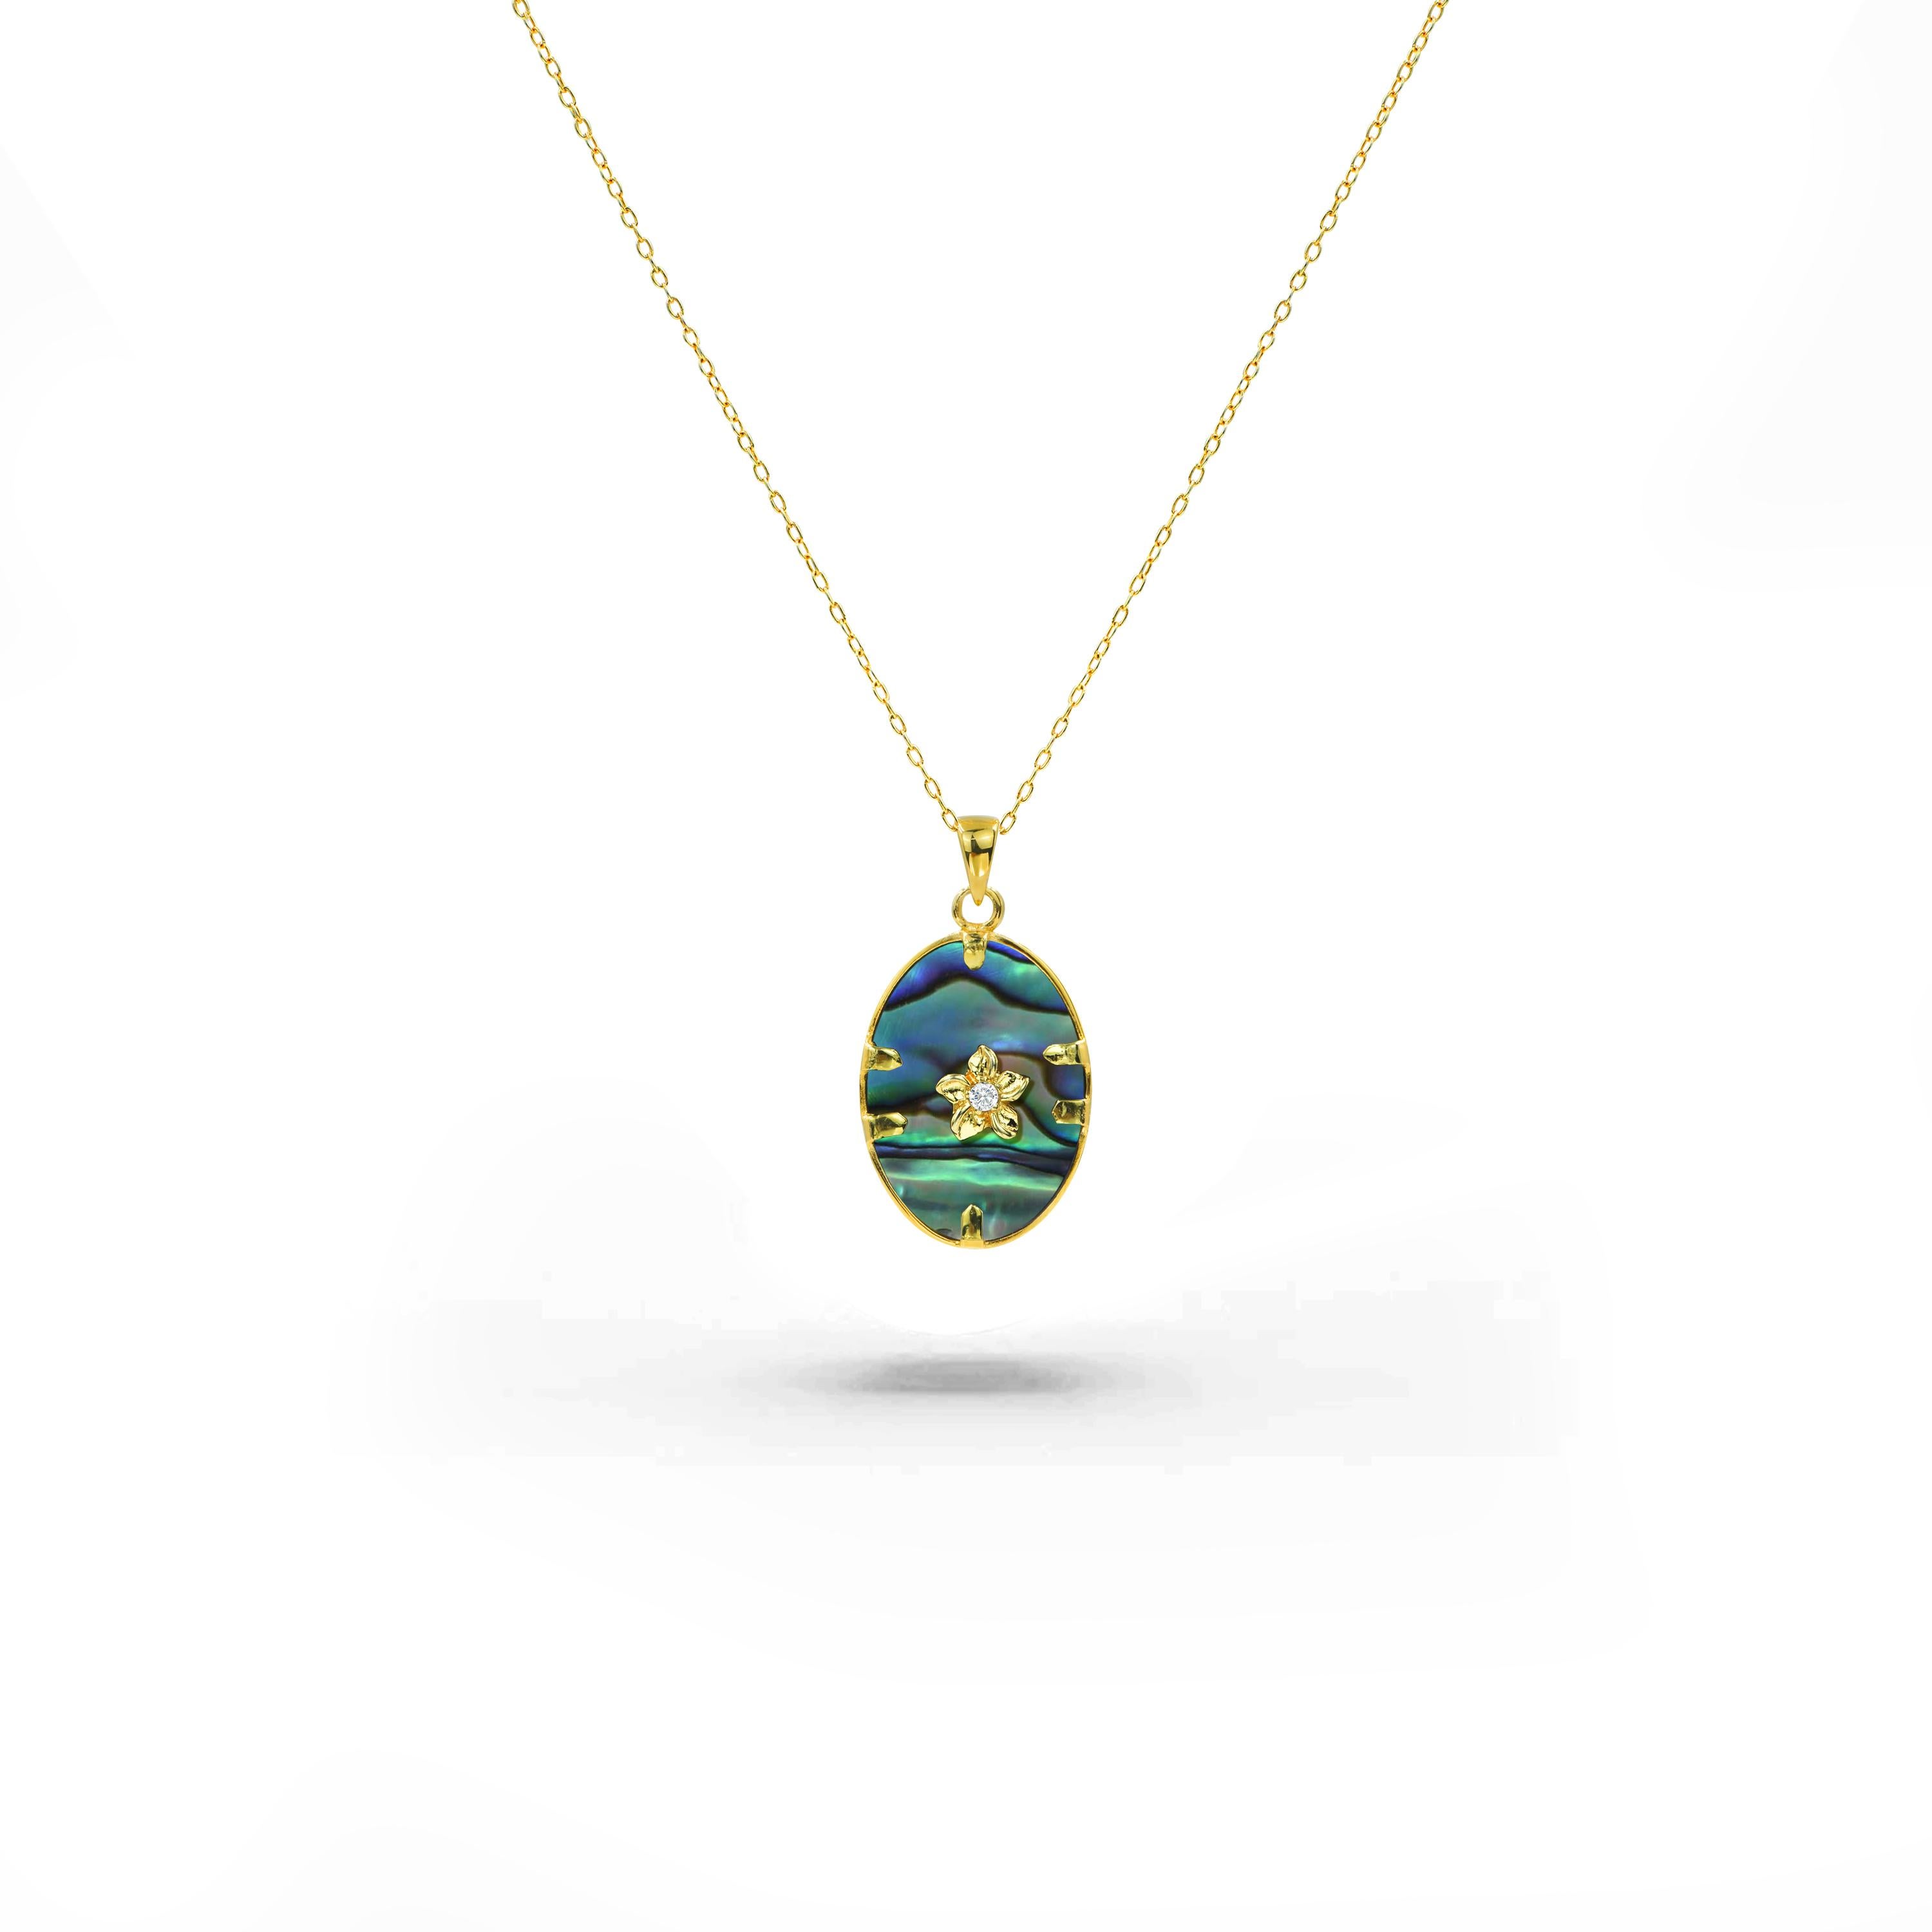 Voici notre extraordinaire collier en or 18 carats, une incarnation de l'élégance qui marie harmonieusement l'éclat des pierres précieuses de votre choix à l'allure intemporelle des diamants naturels. Cette pièce captivante témoigne d'un